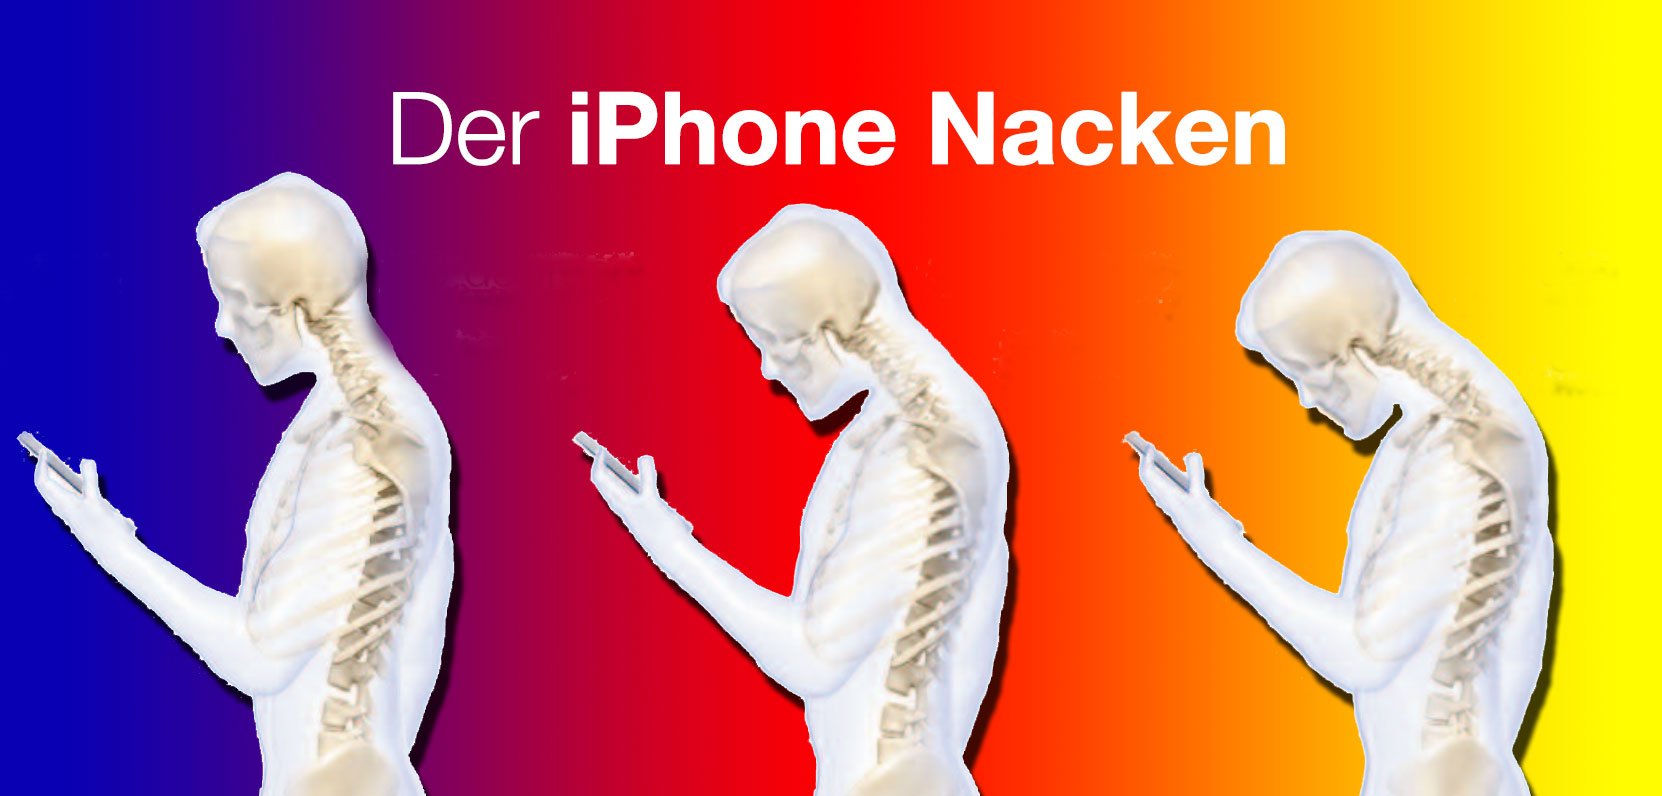 Ärzte warnen vor iPhone Nacken! 2